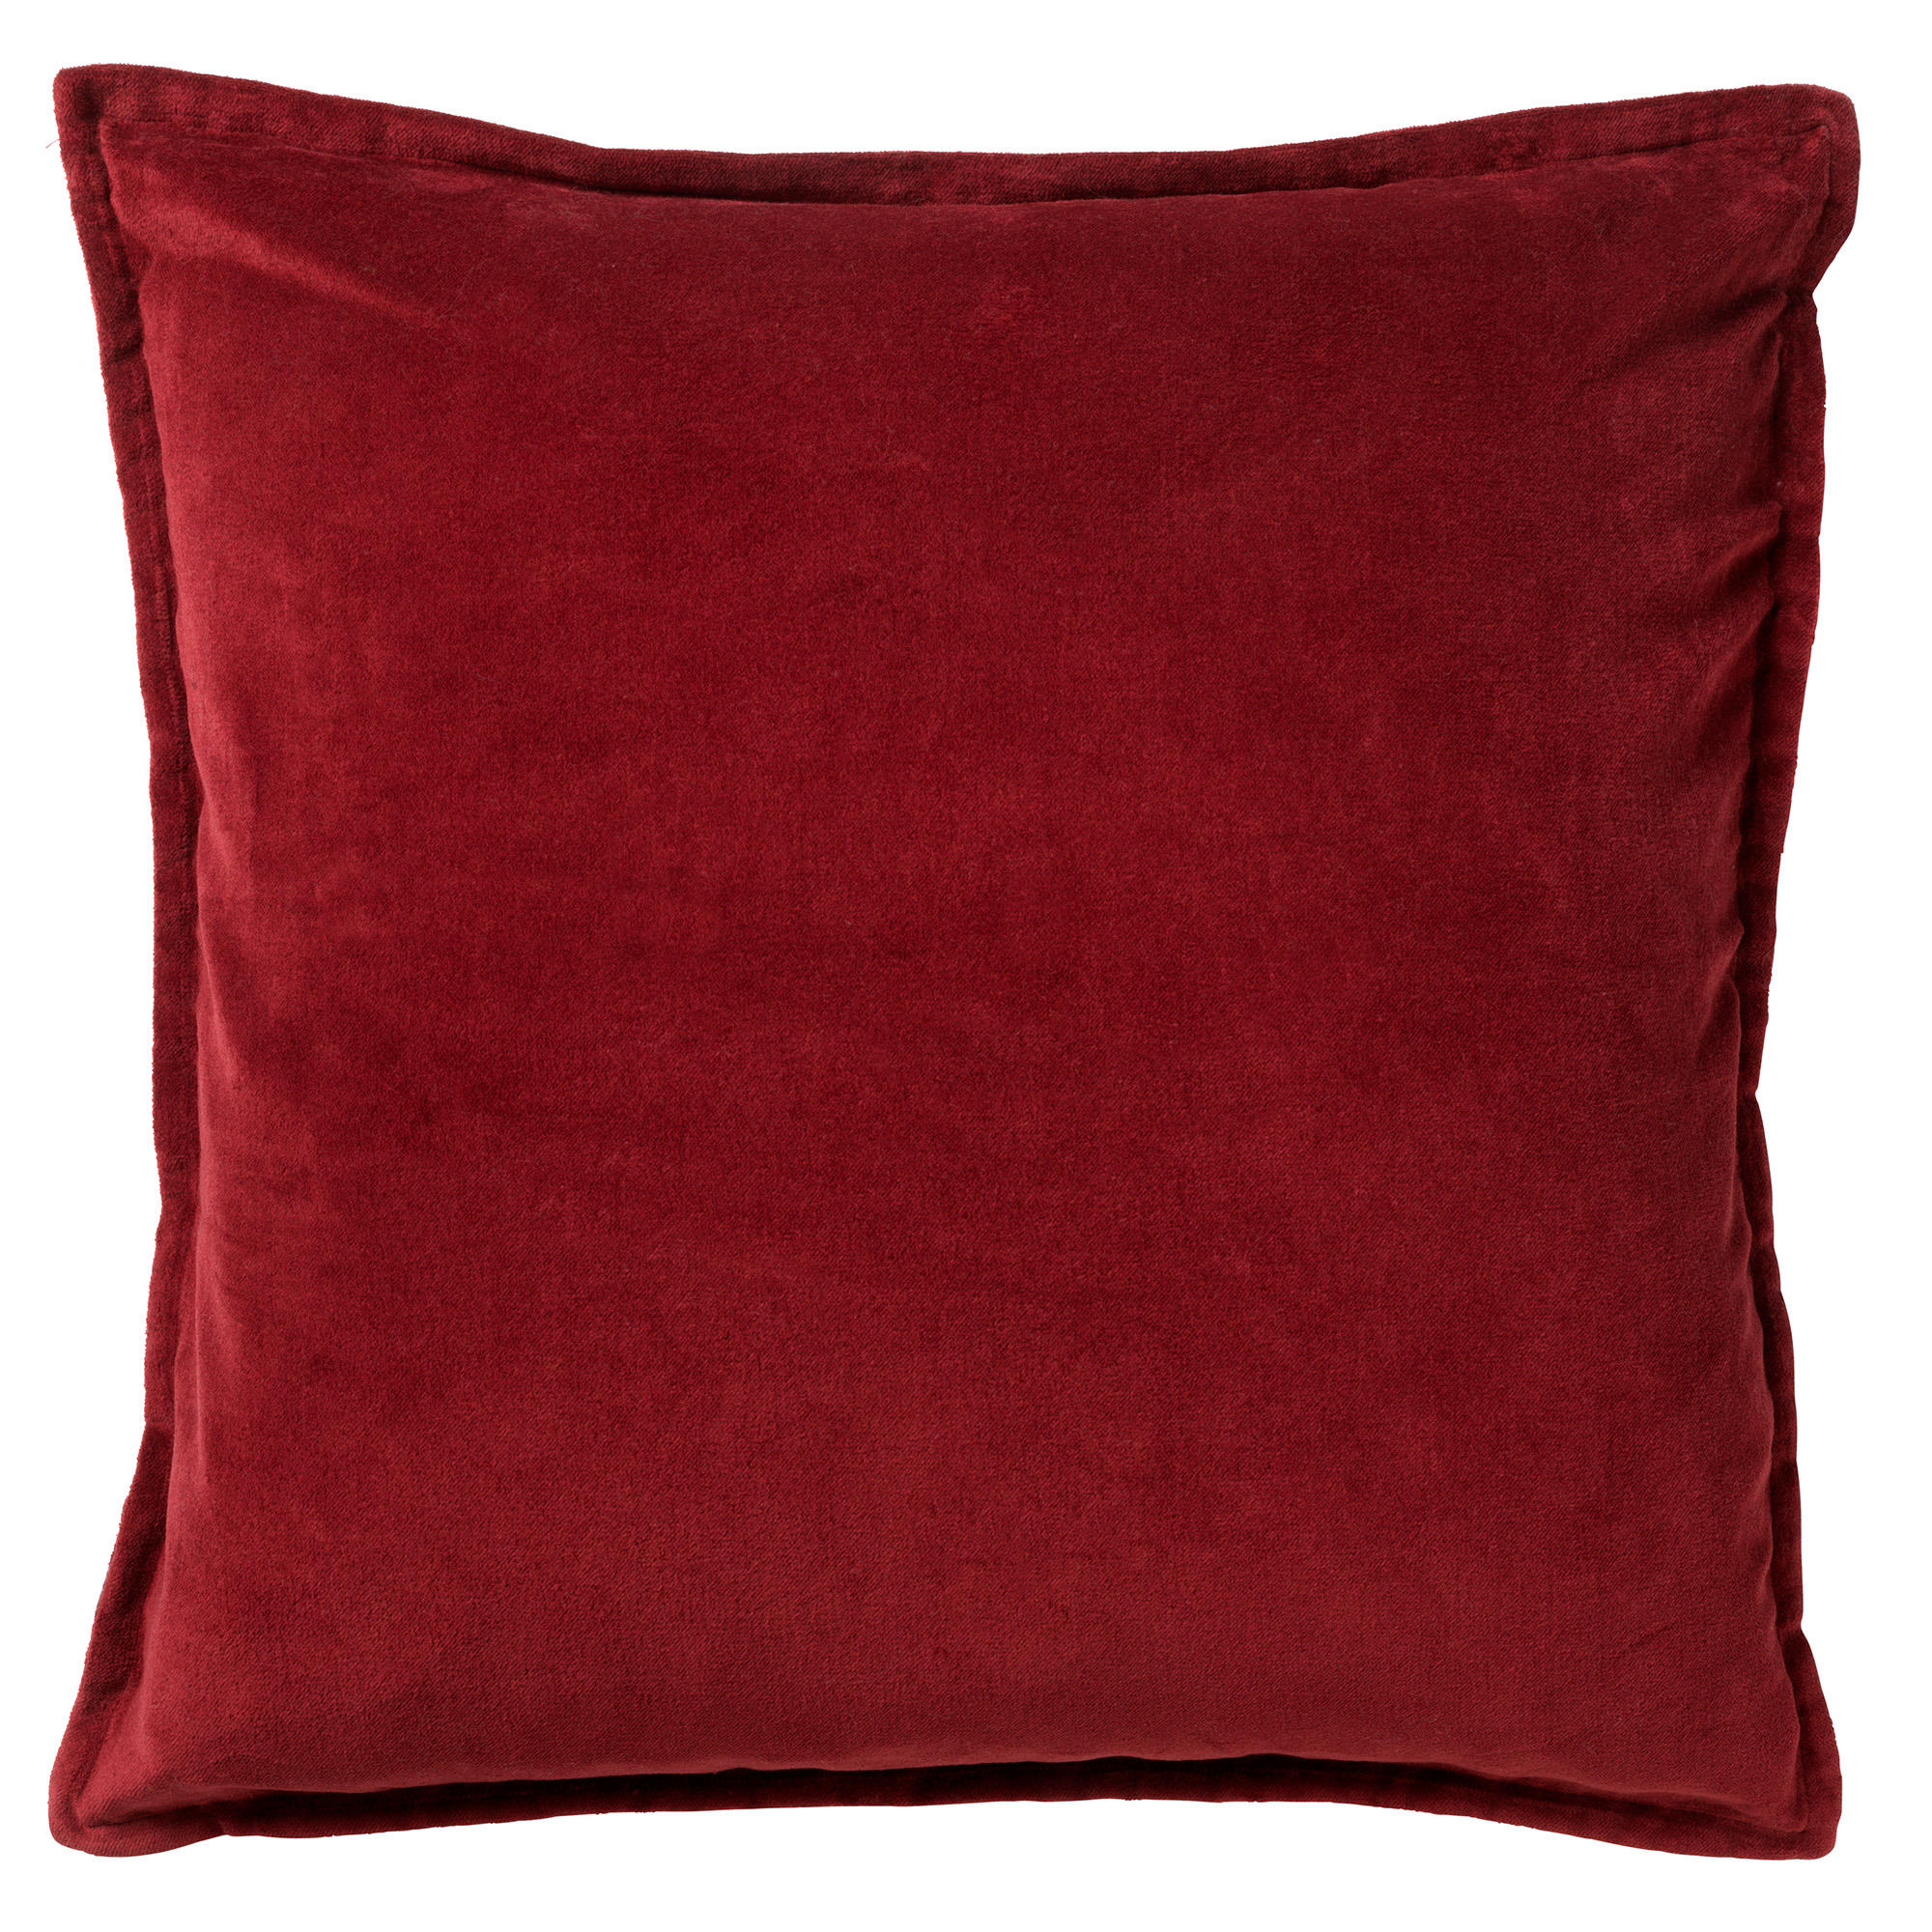 CAITH - Kussenhoes 50x50 cm - 100% katoen - velvet - lekker zacht - Merlot - rood